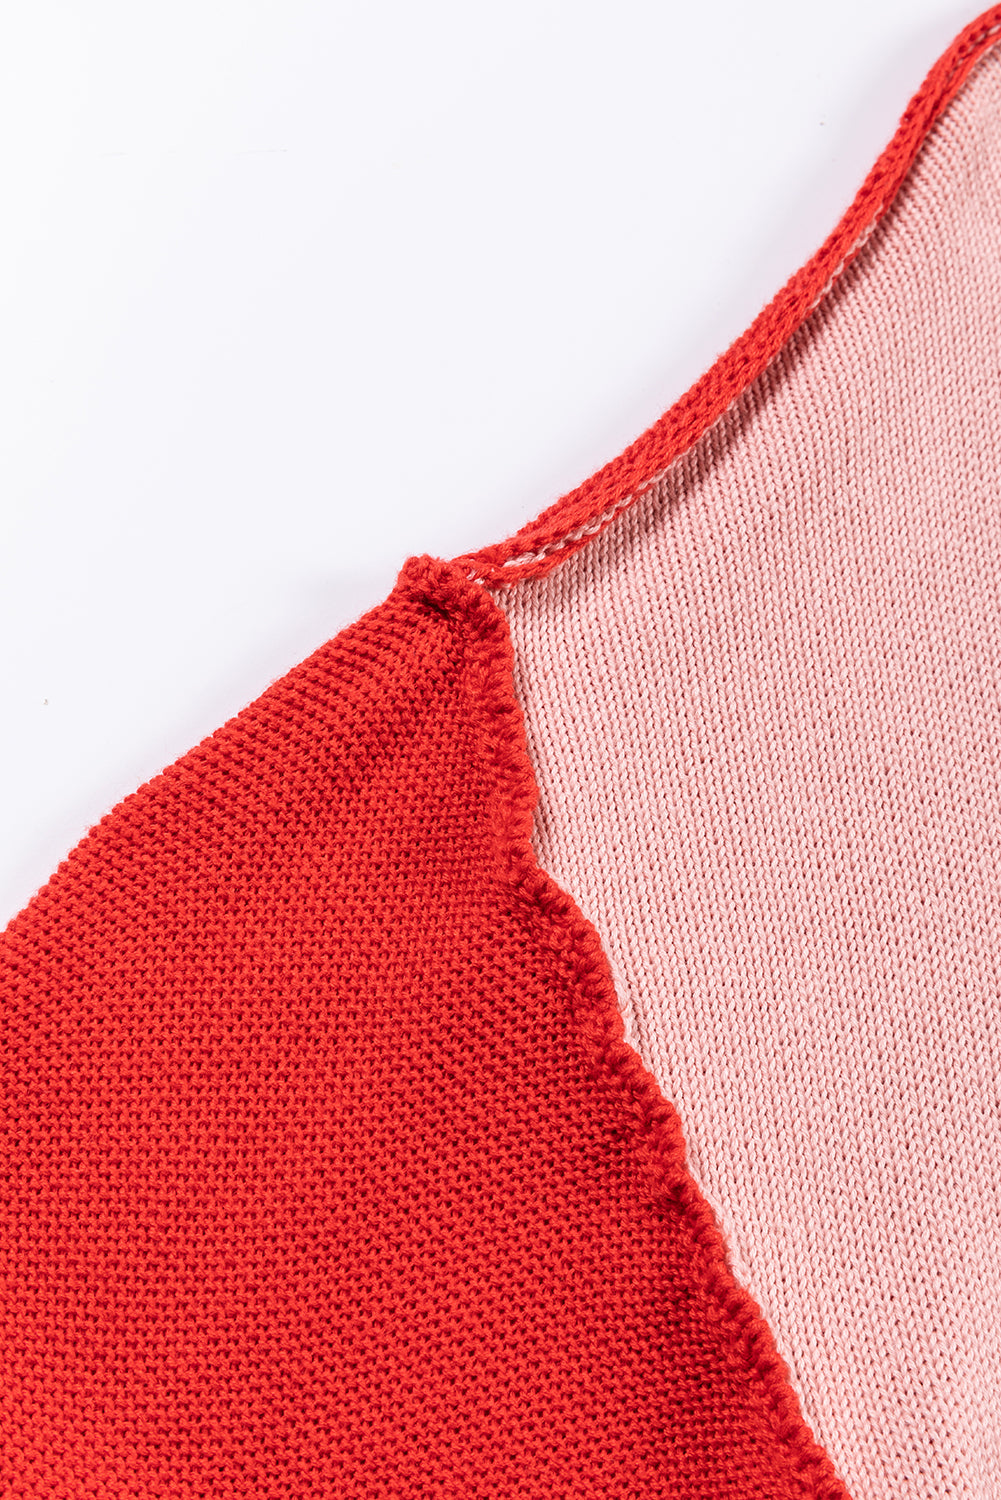 Rožnat pulover z rebrastimi rokavi in ​​barvnimi bloki